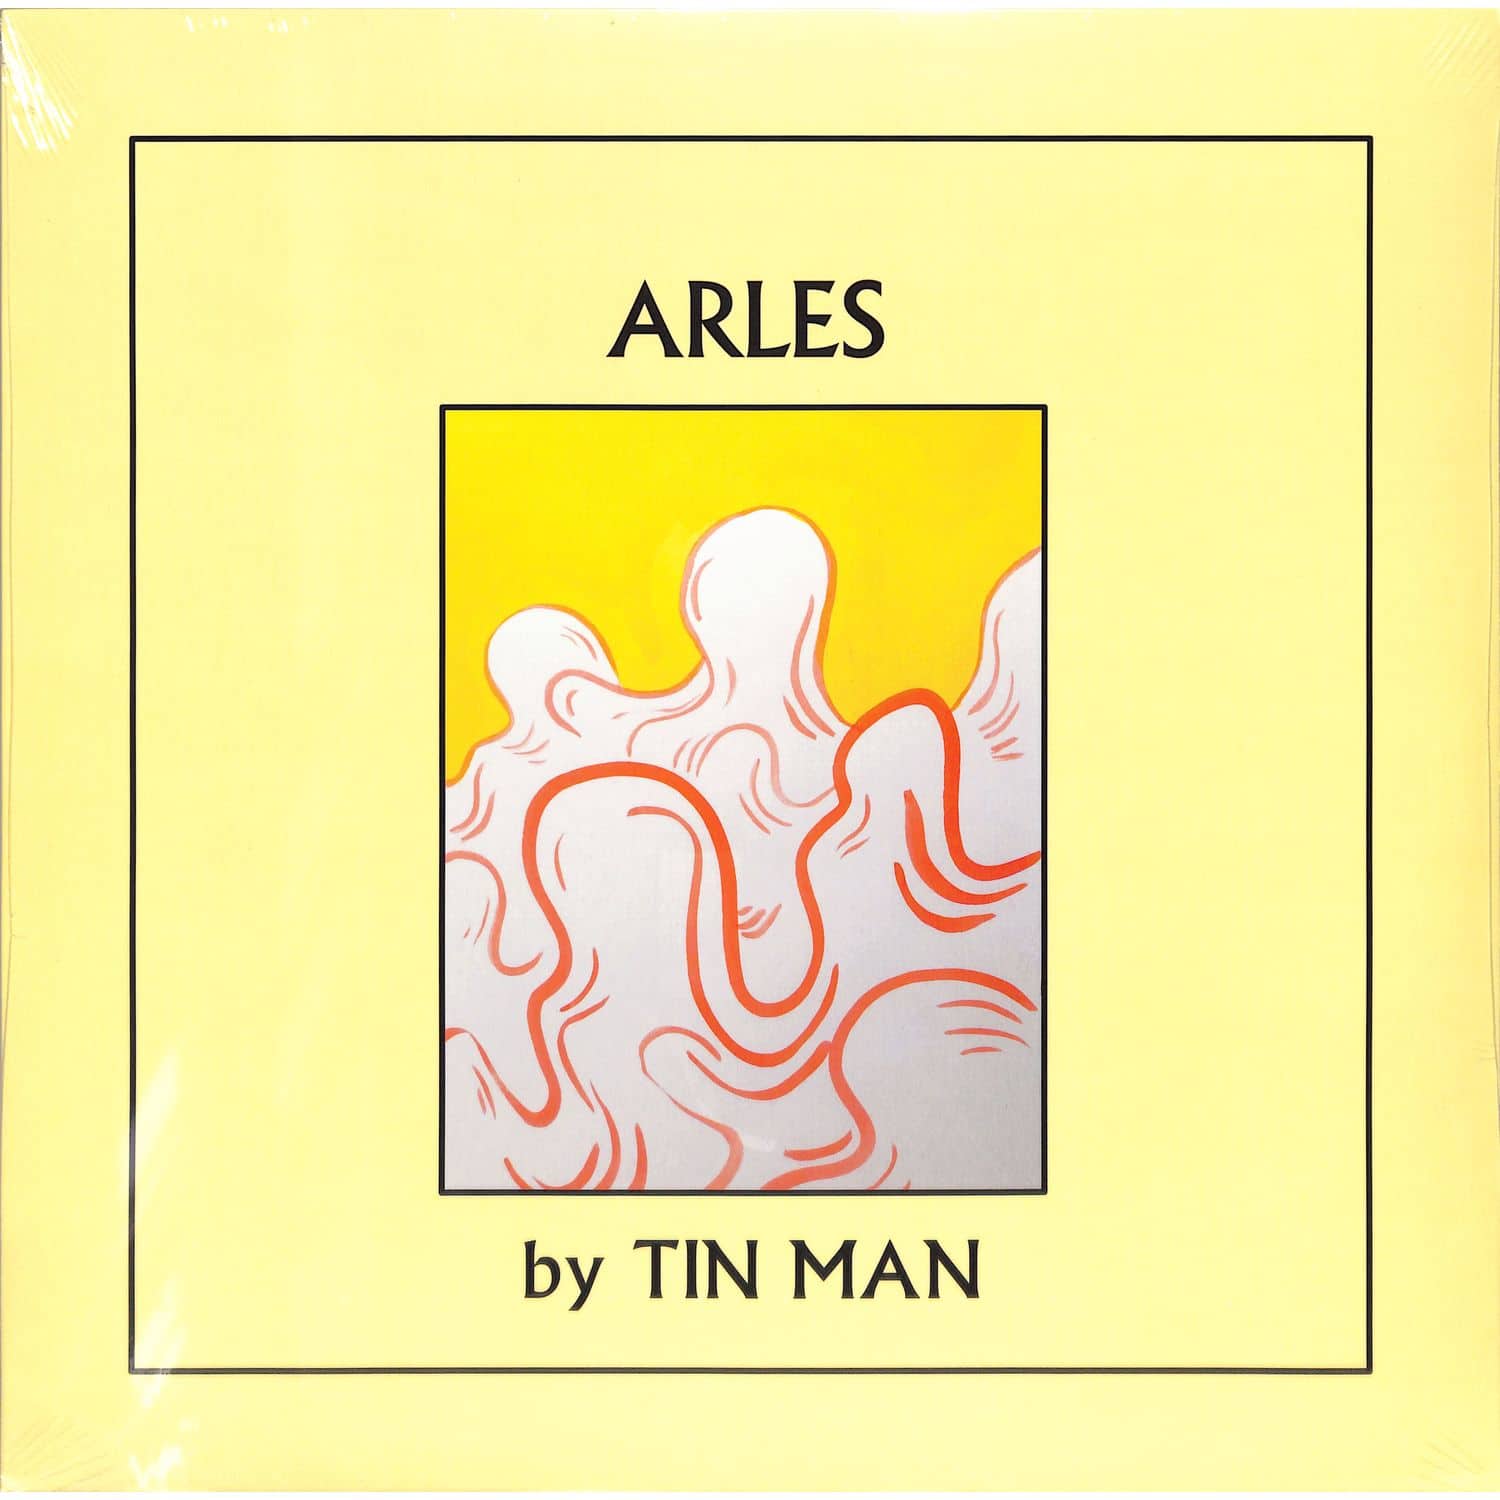 Tin Man - ARLES 